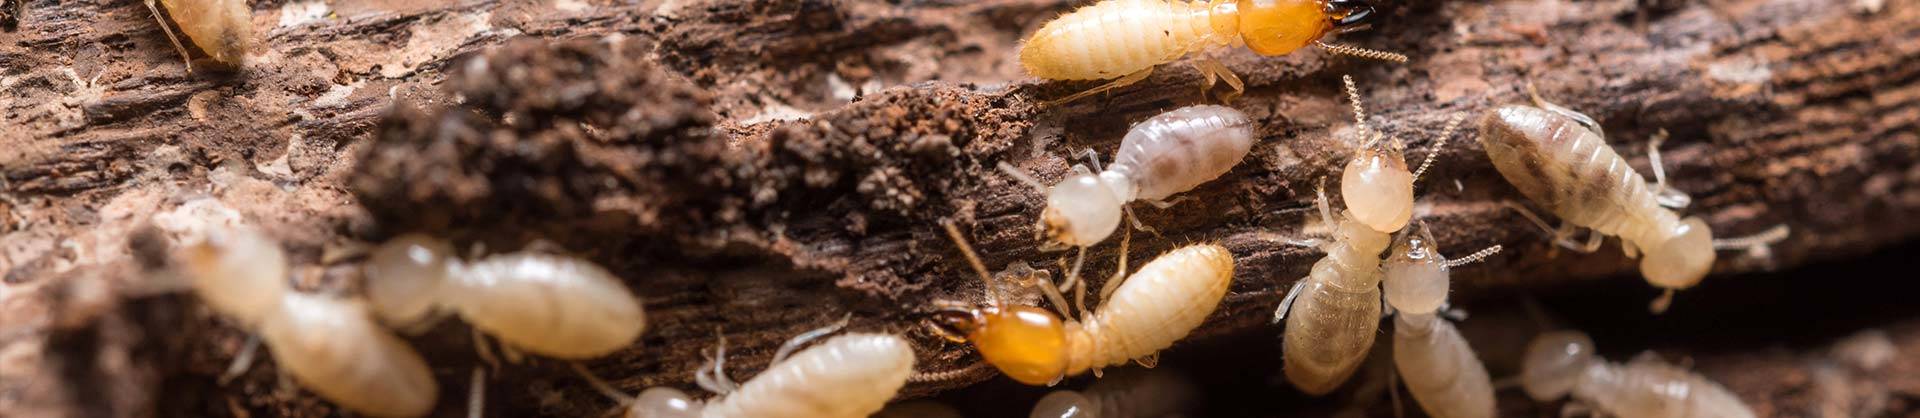 Newcastle Termite Inspection & Termite Control